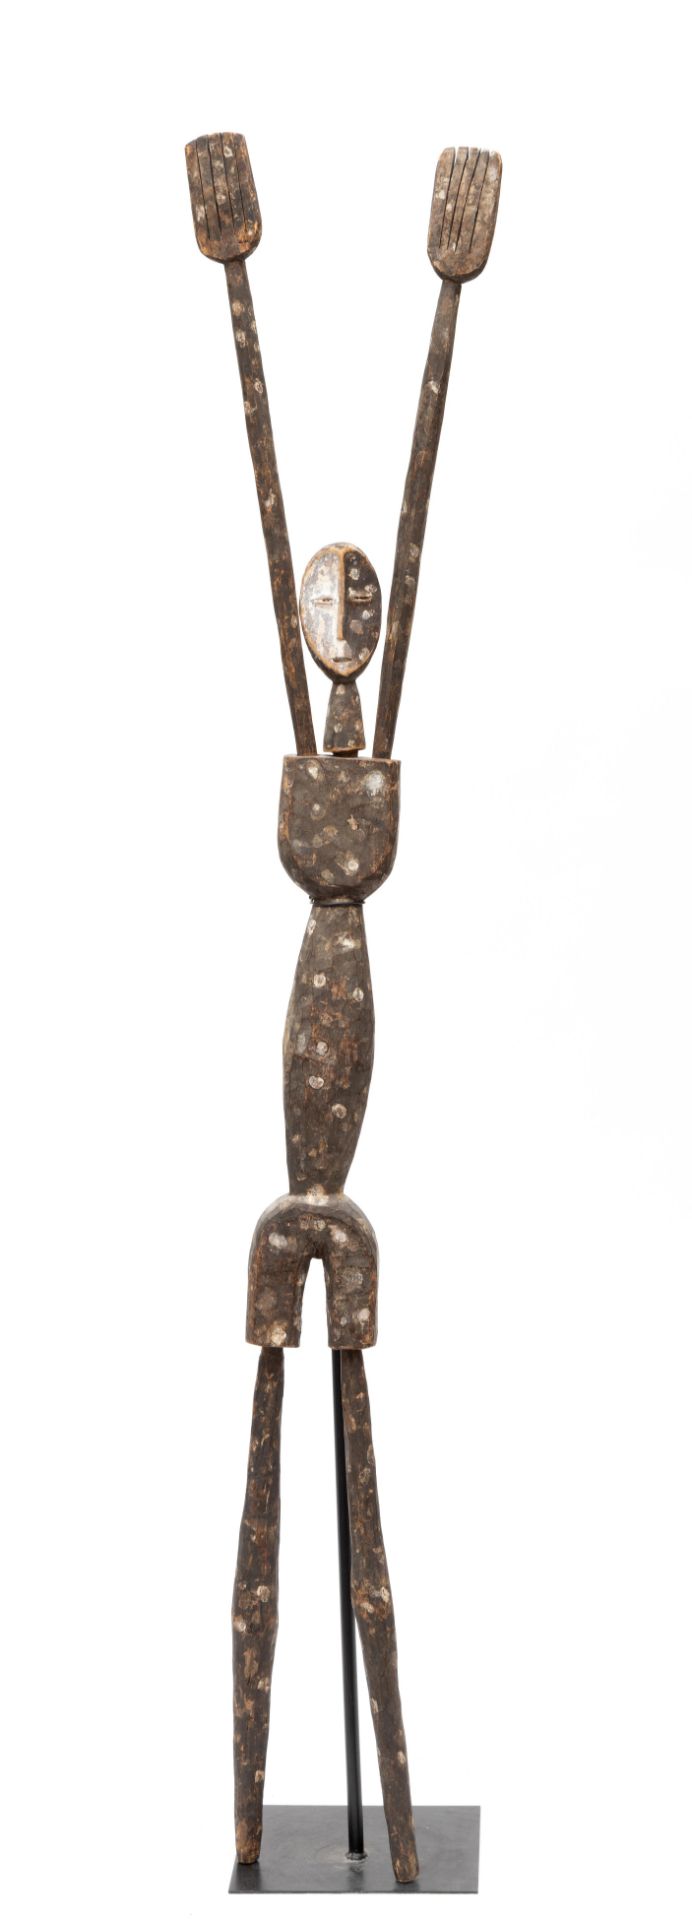 D.R. Congo, a Lengola style figure